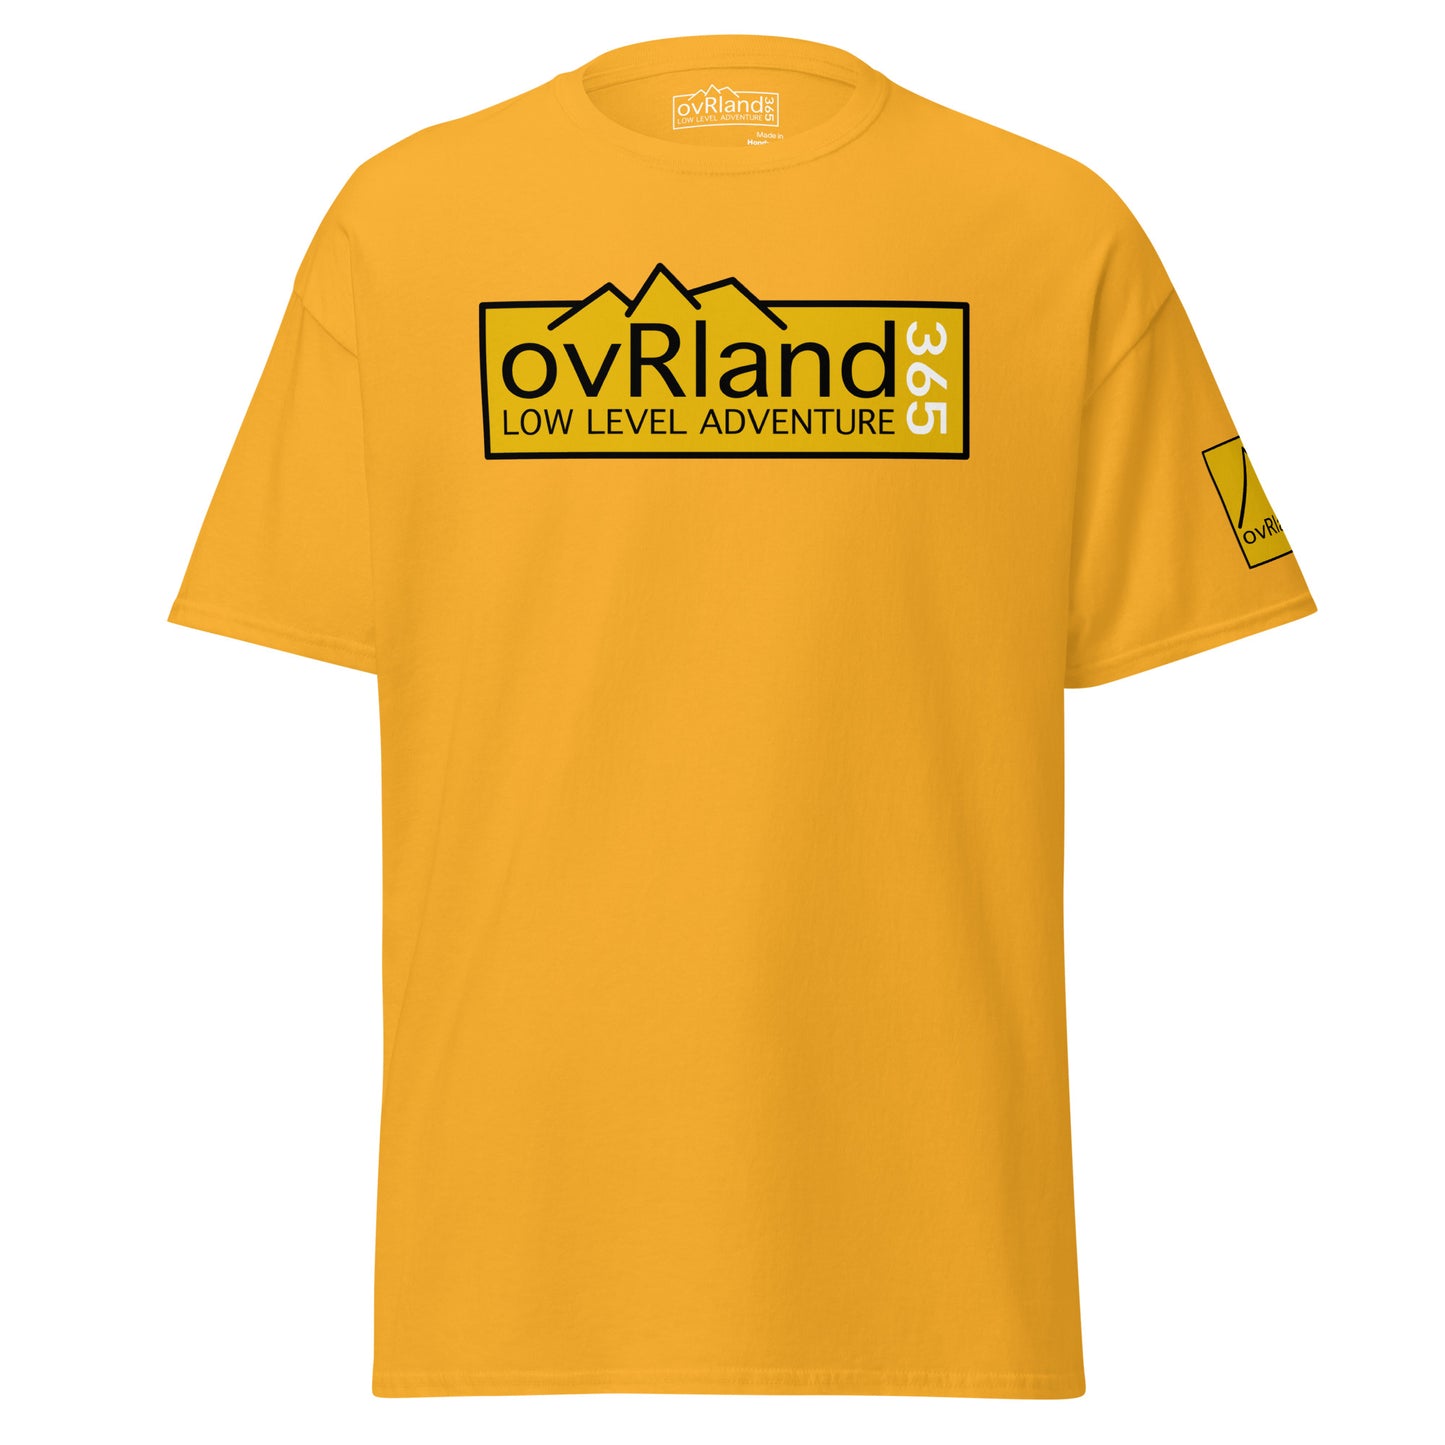 Men's overland gold t-shirt. ovRland365. overland365.com